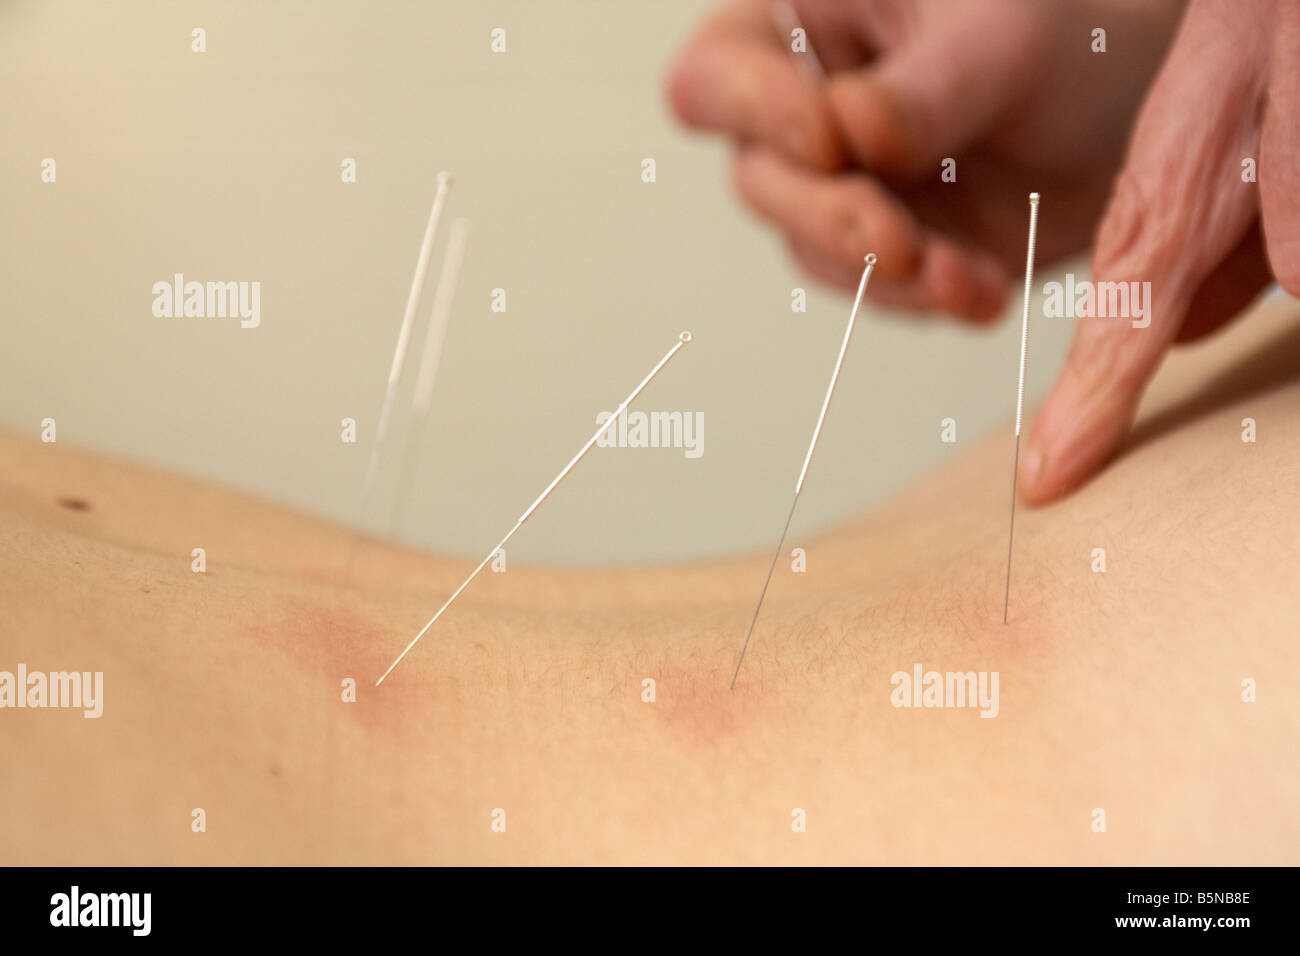 Acupunturista femenina aplicando las agujas de acupuntura en la parte inferior de la espalda de una mujer adulta fines del veinte para aliviar el dolor de espalda Foto de stock